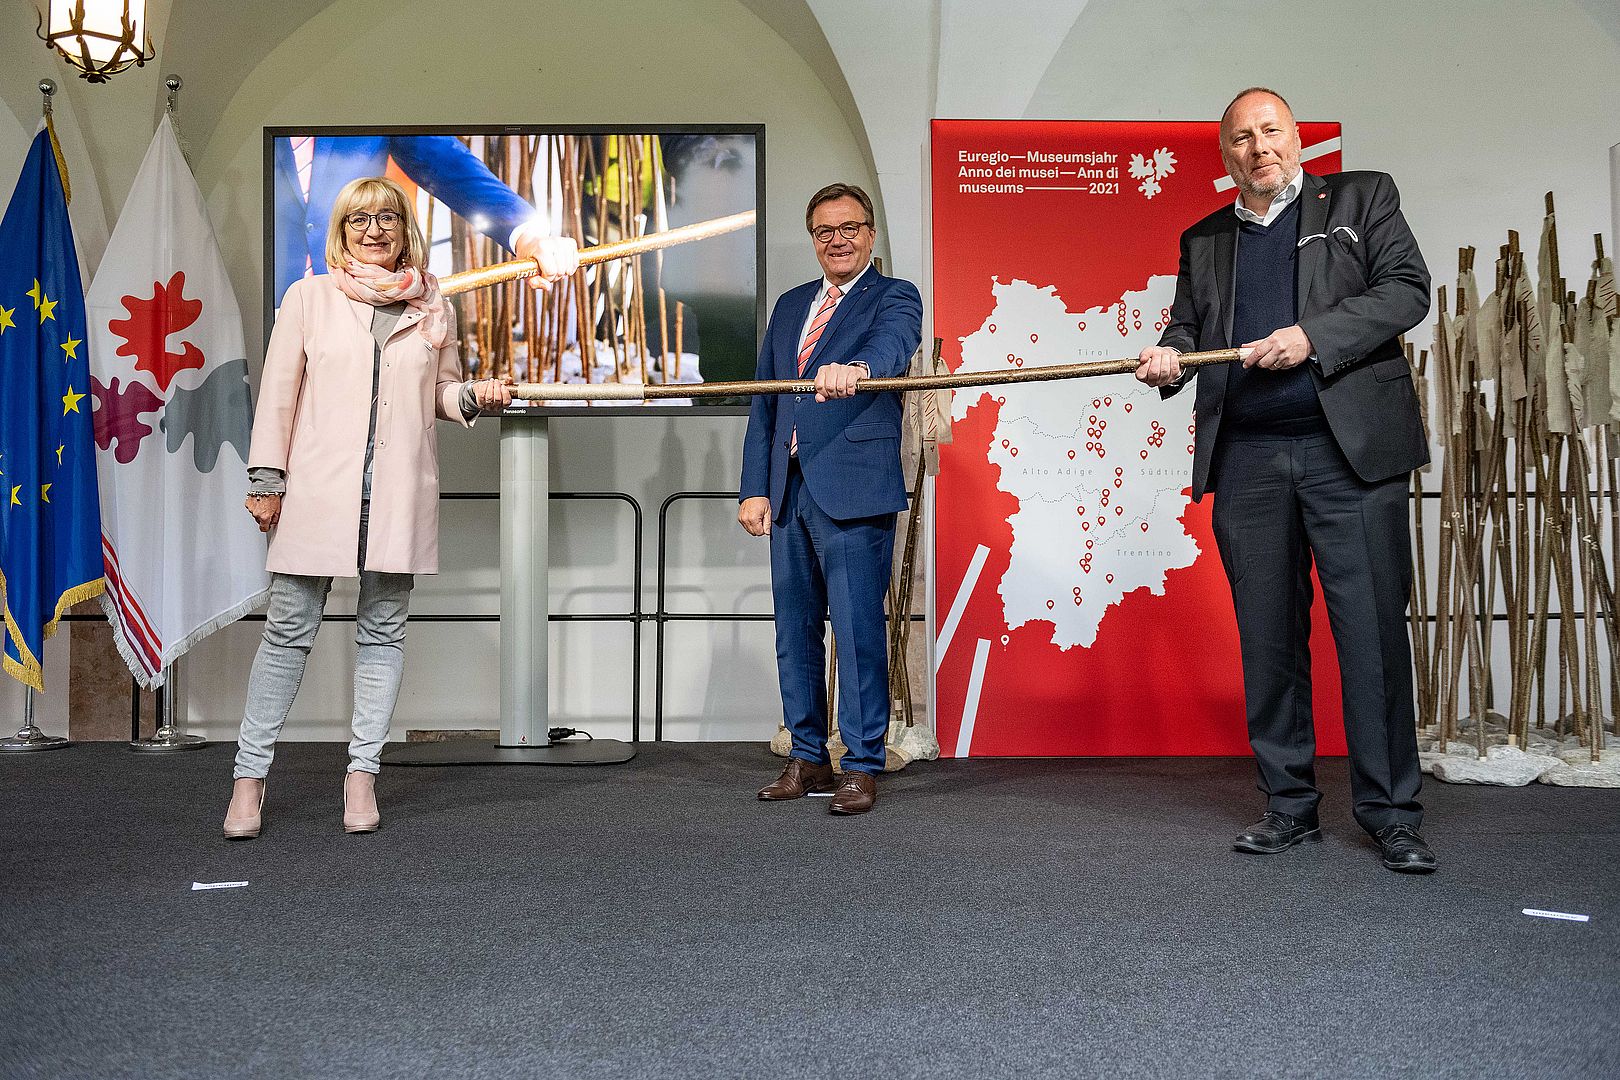 Palfrader, Platter und Assmann bei der Eröffnung des Euregio-Museumsjahres 2021